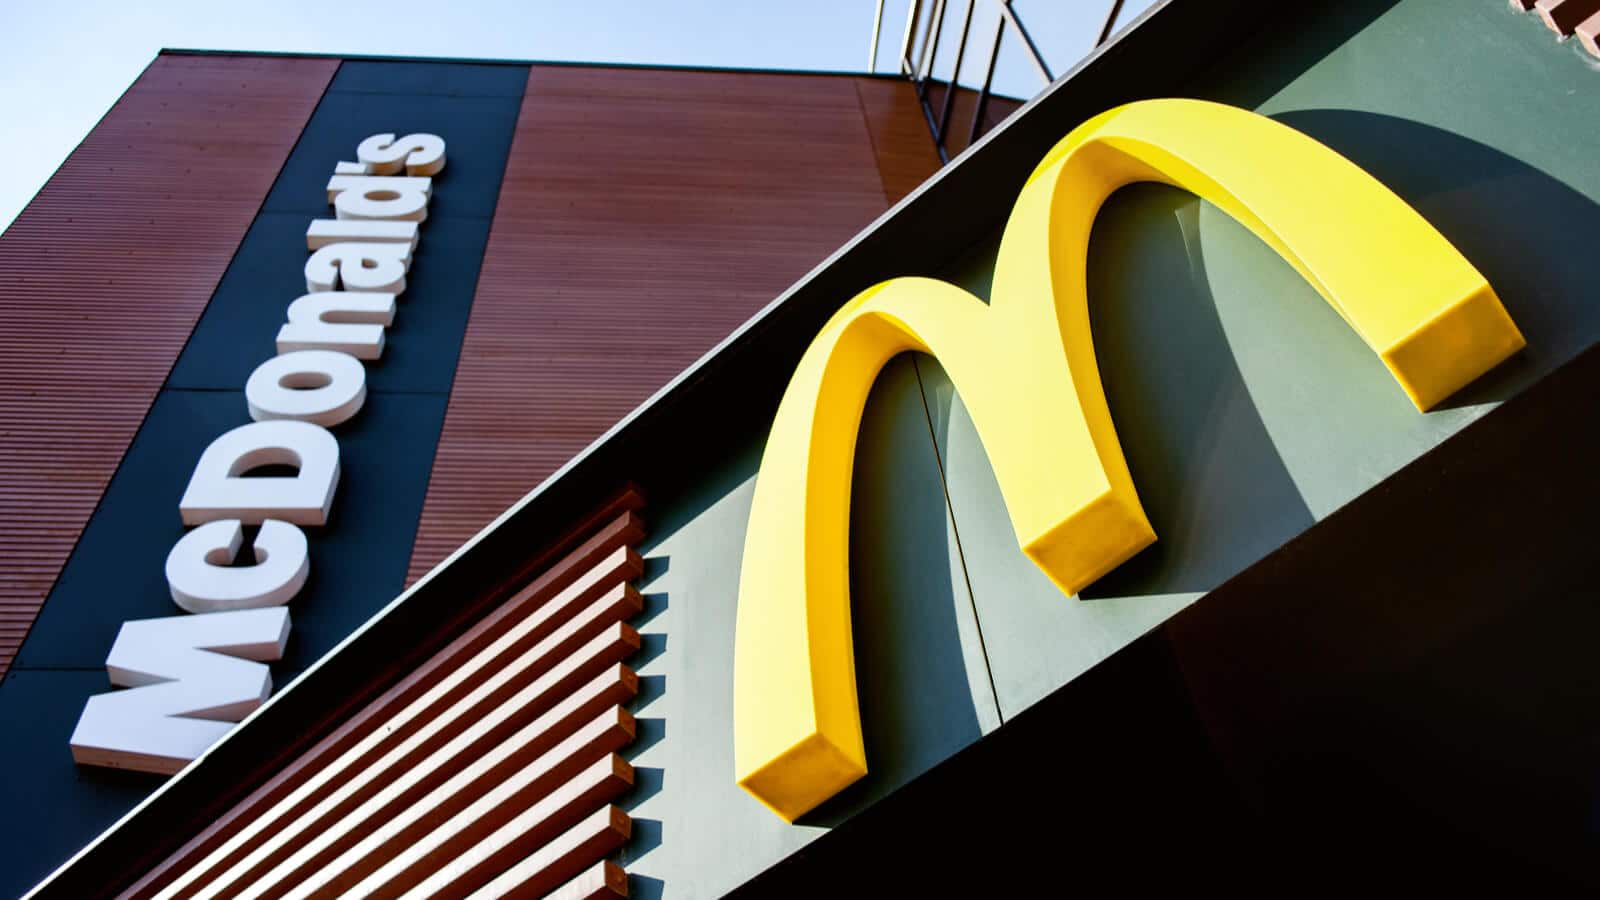 McDonald's Logo auf Restaurant der Fast Food Kette, die seit über 80 Jahren Marketing betreibt.